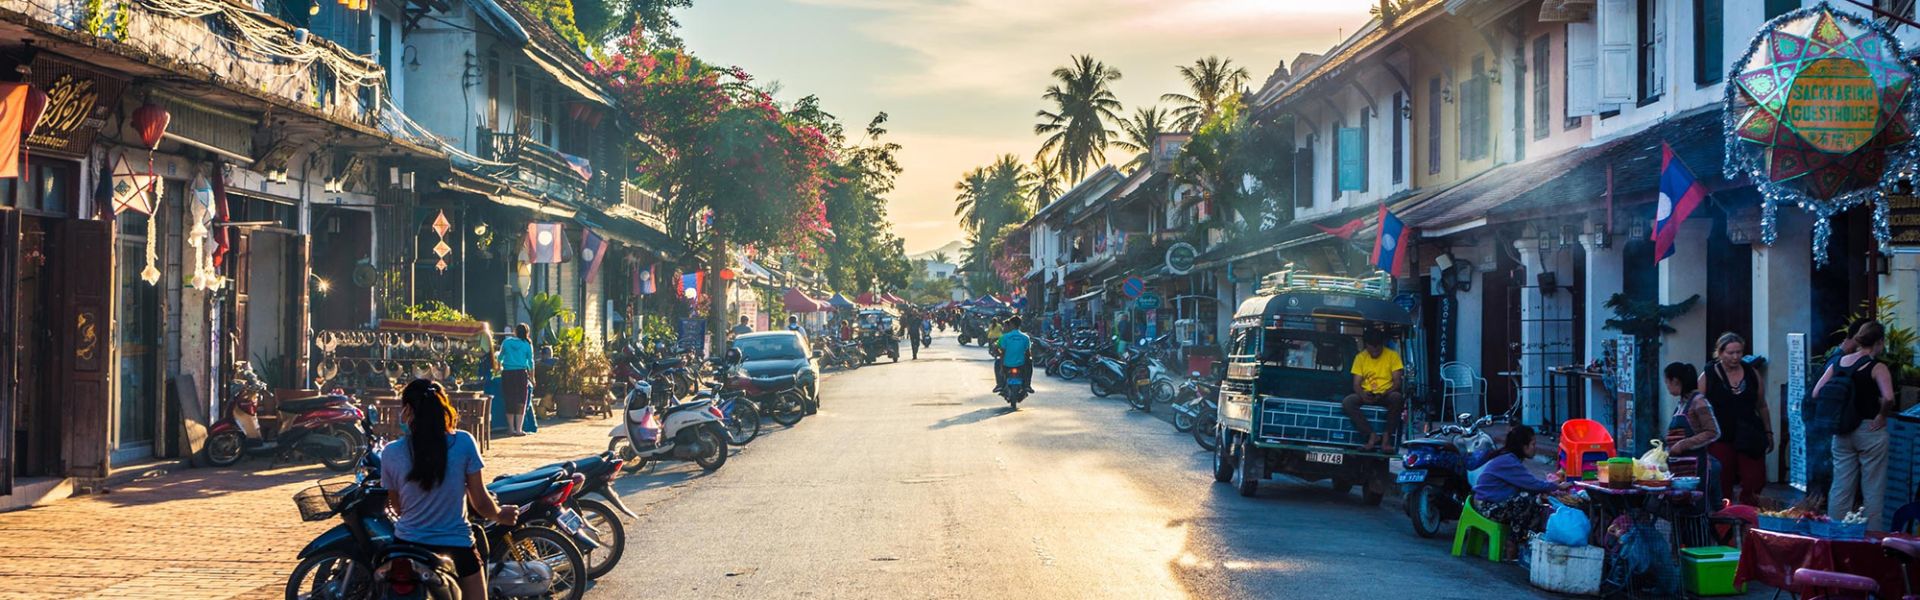 Luang Prabang - Consejos de viaje | Guía de viajes a Laos